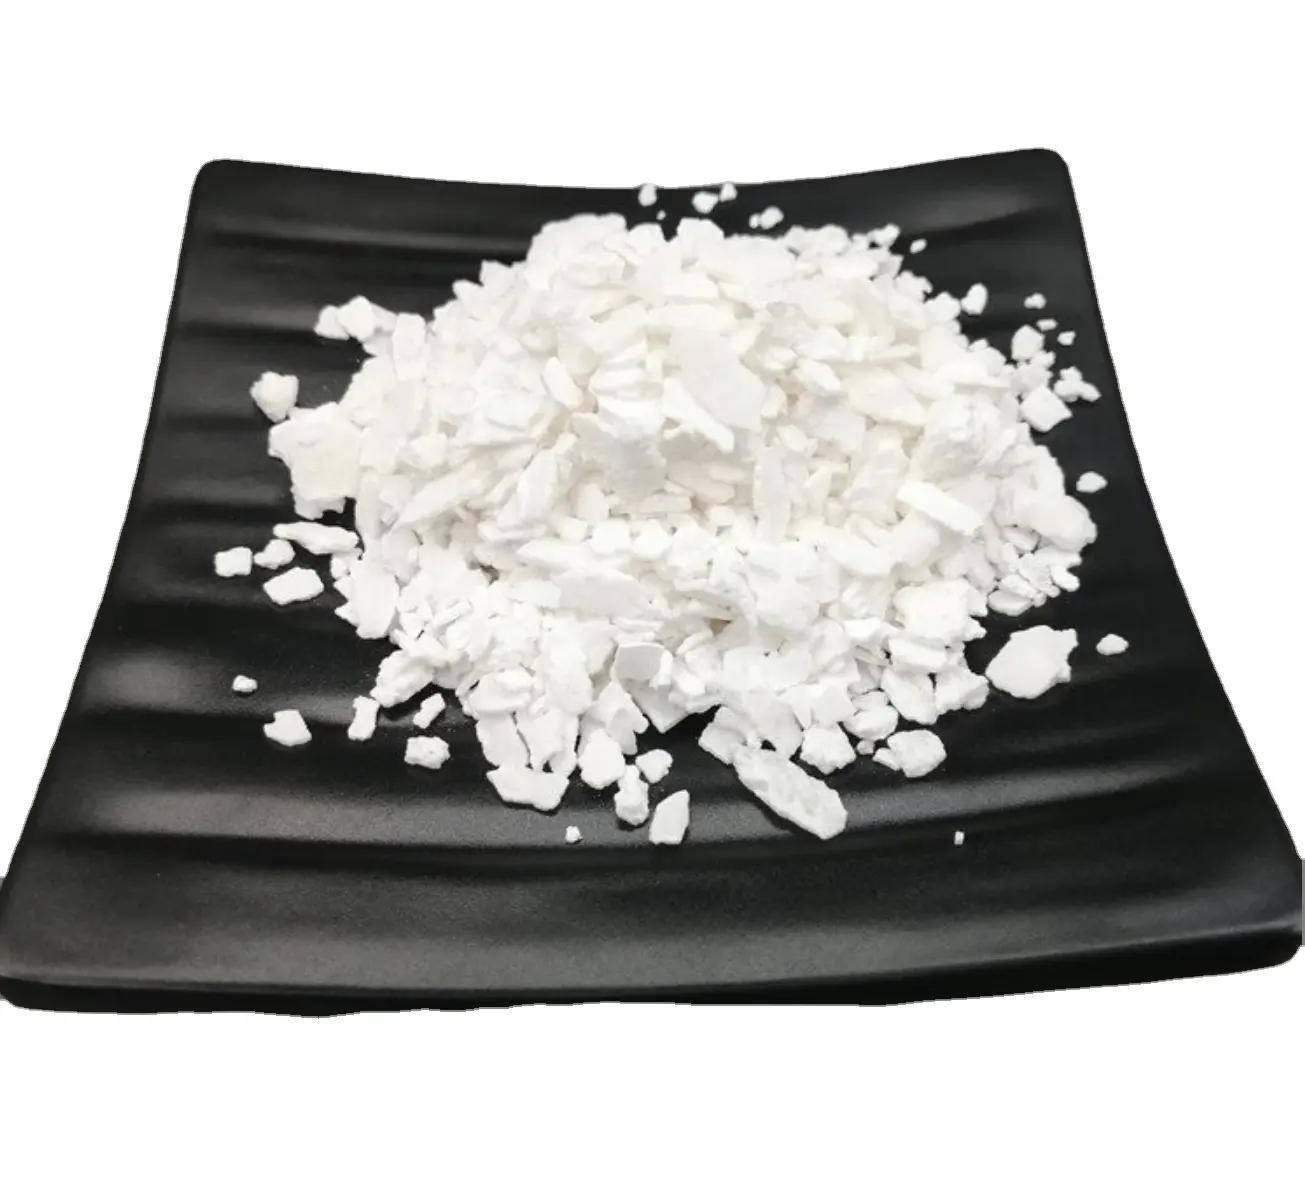 Poudre de CaCl2 de qualité alimentaire industrielle 74%,94% granules de chlorure de calcium